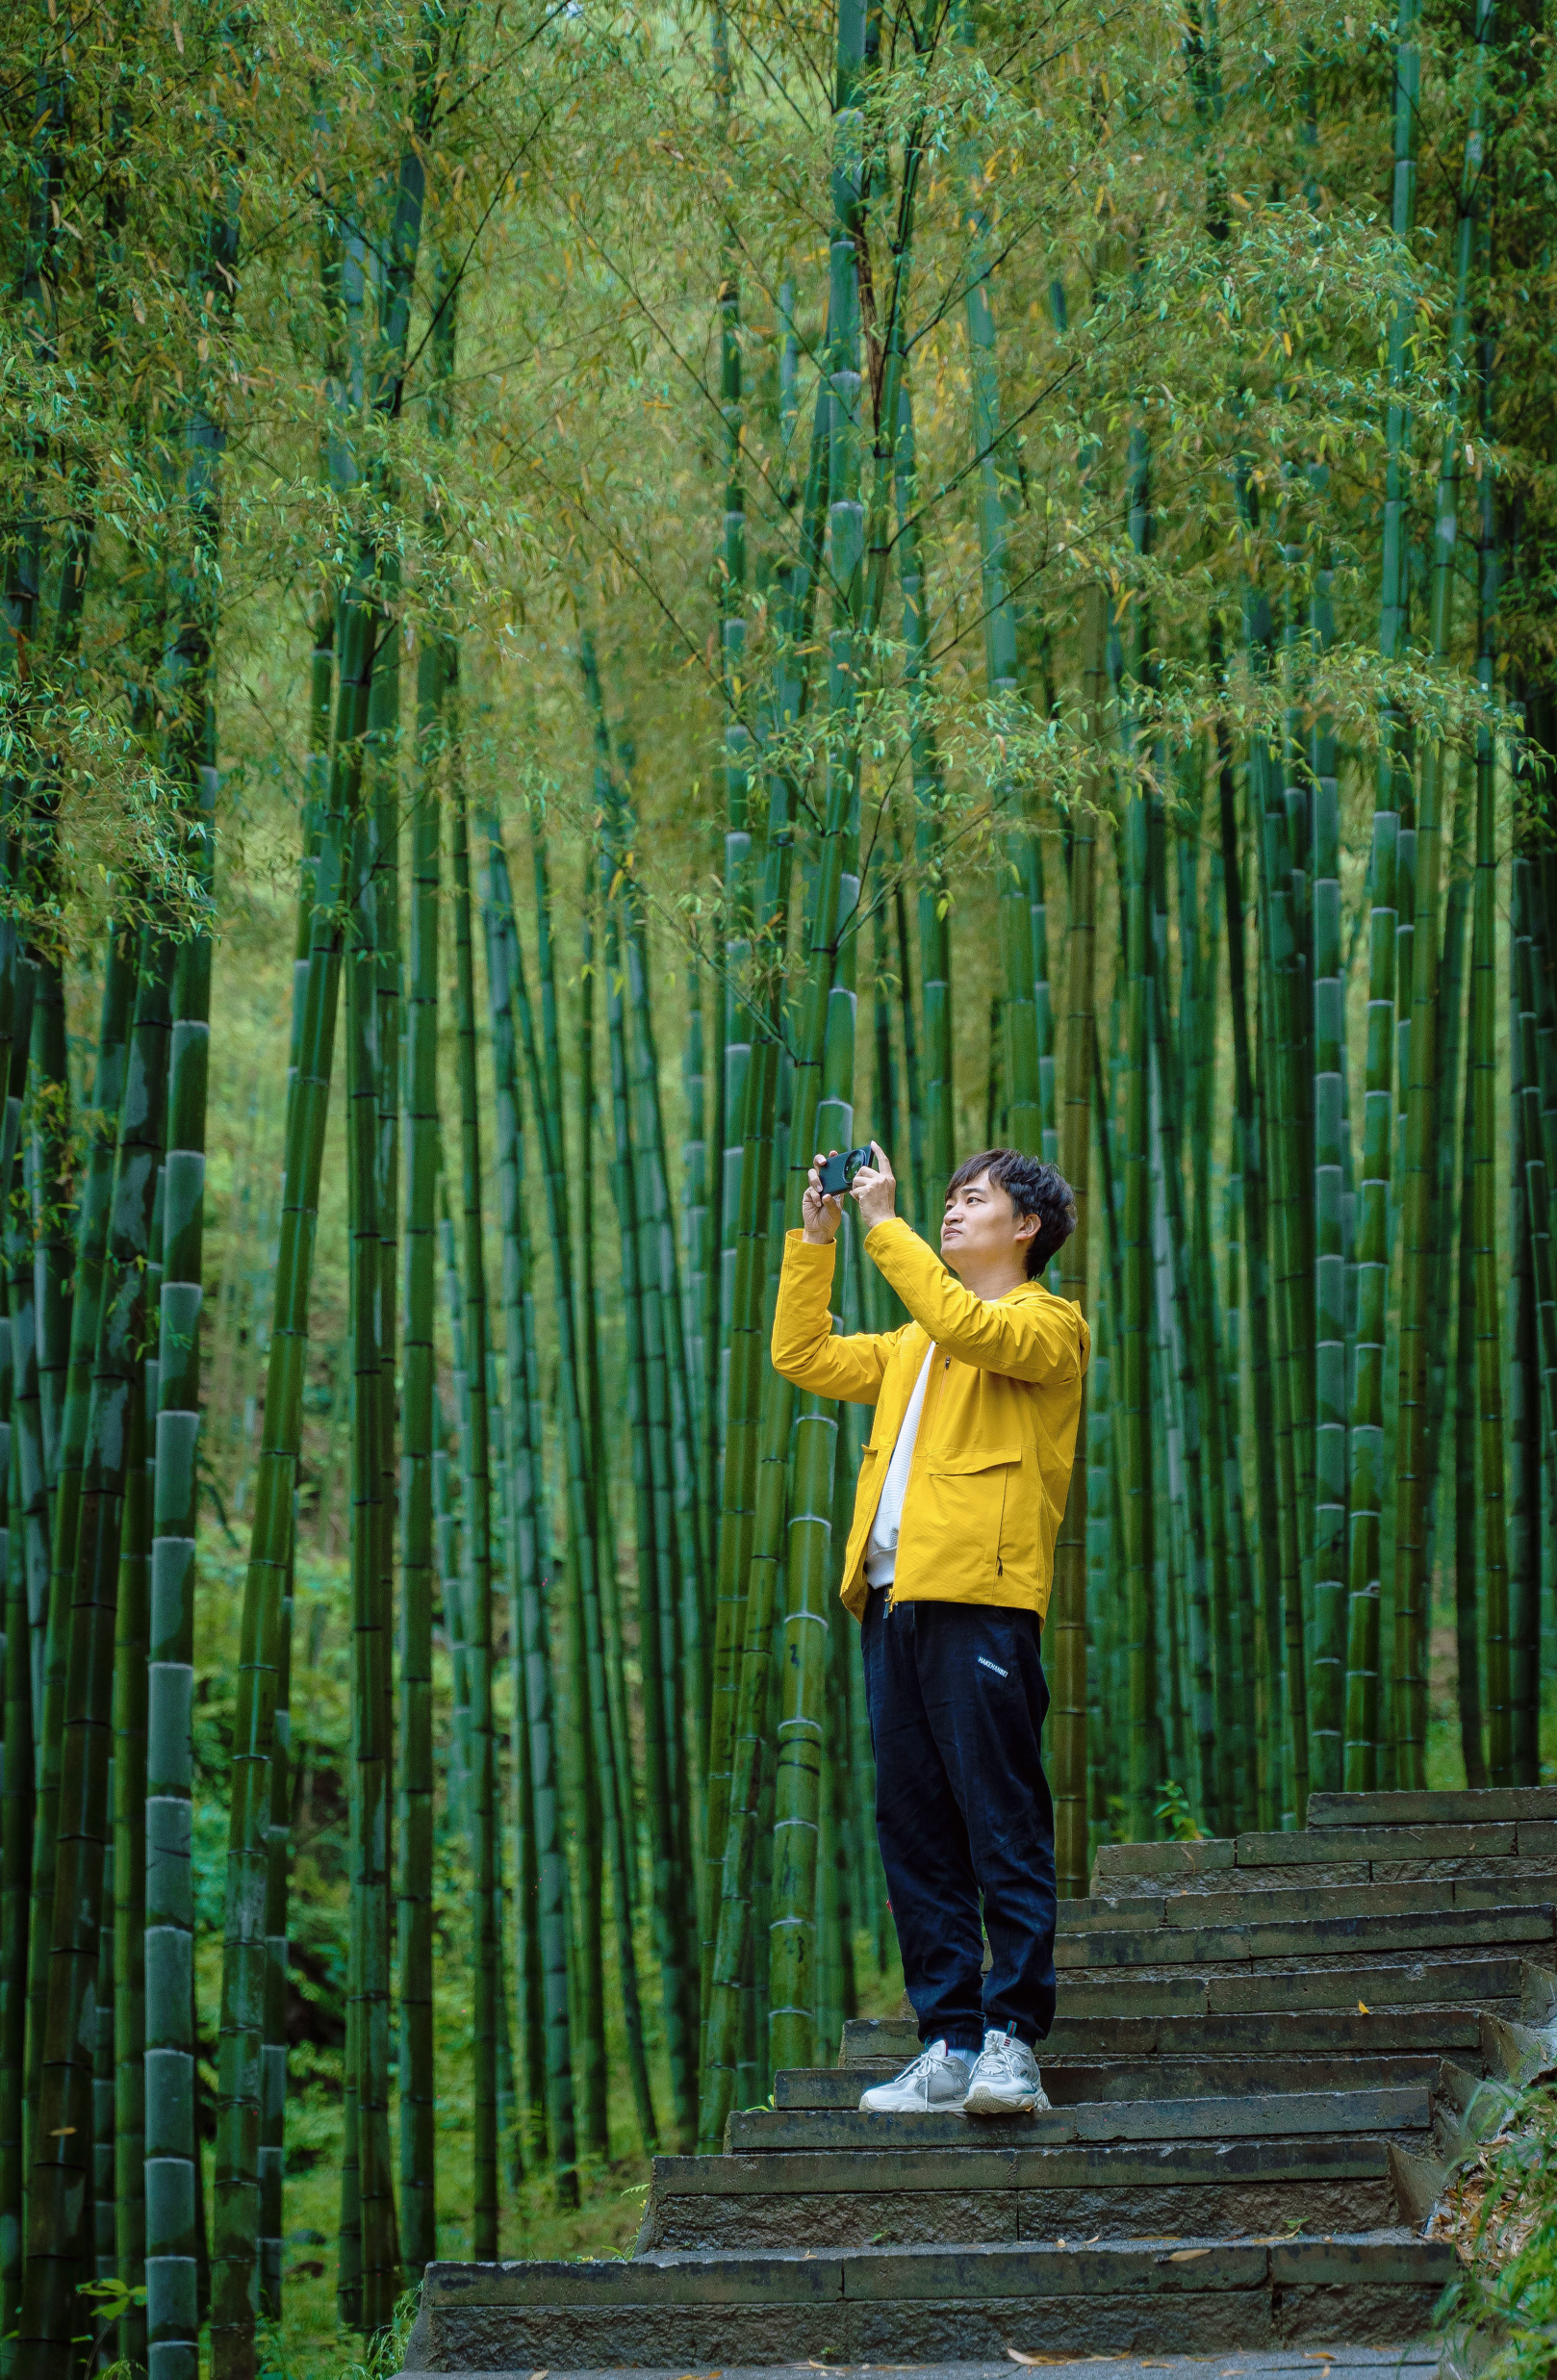 安吉是竹的故乡，这里的中国大竹海，毛竹长满上坡，这里是以毛竹为主的林地，是中国东南部最大的竹文化生态